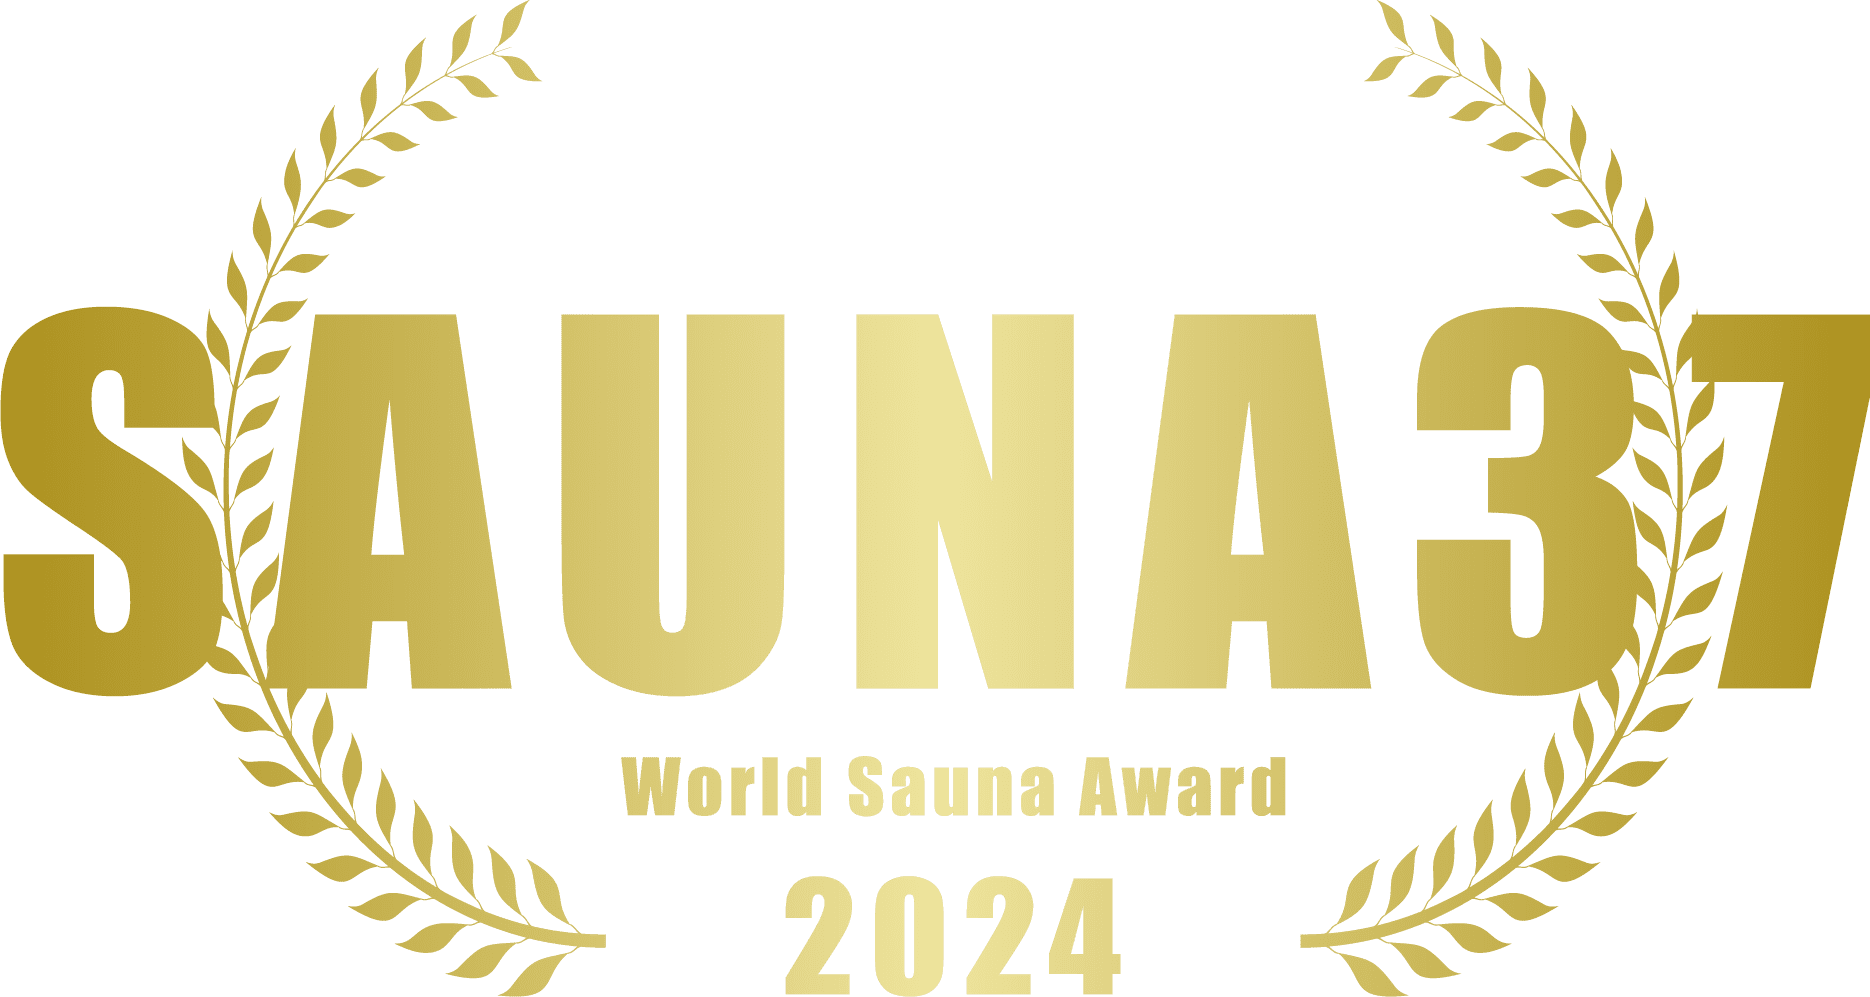 SAUNA37 World Sauna Awards 2024